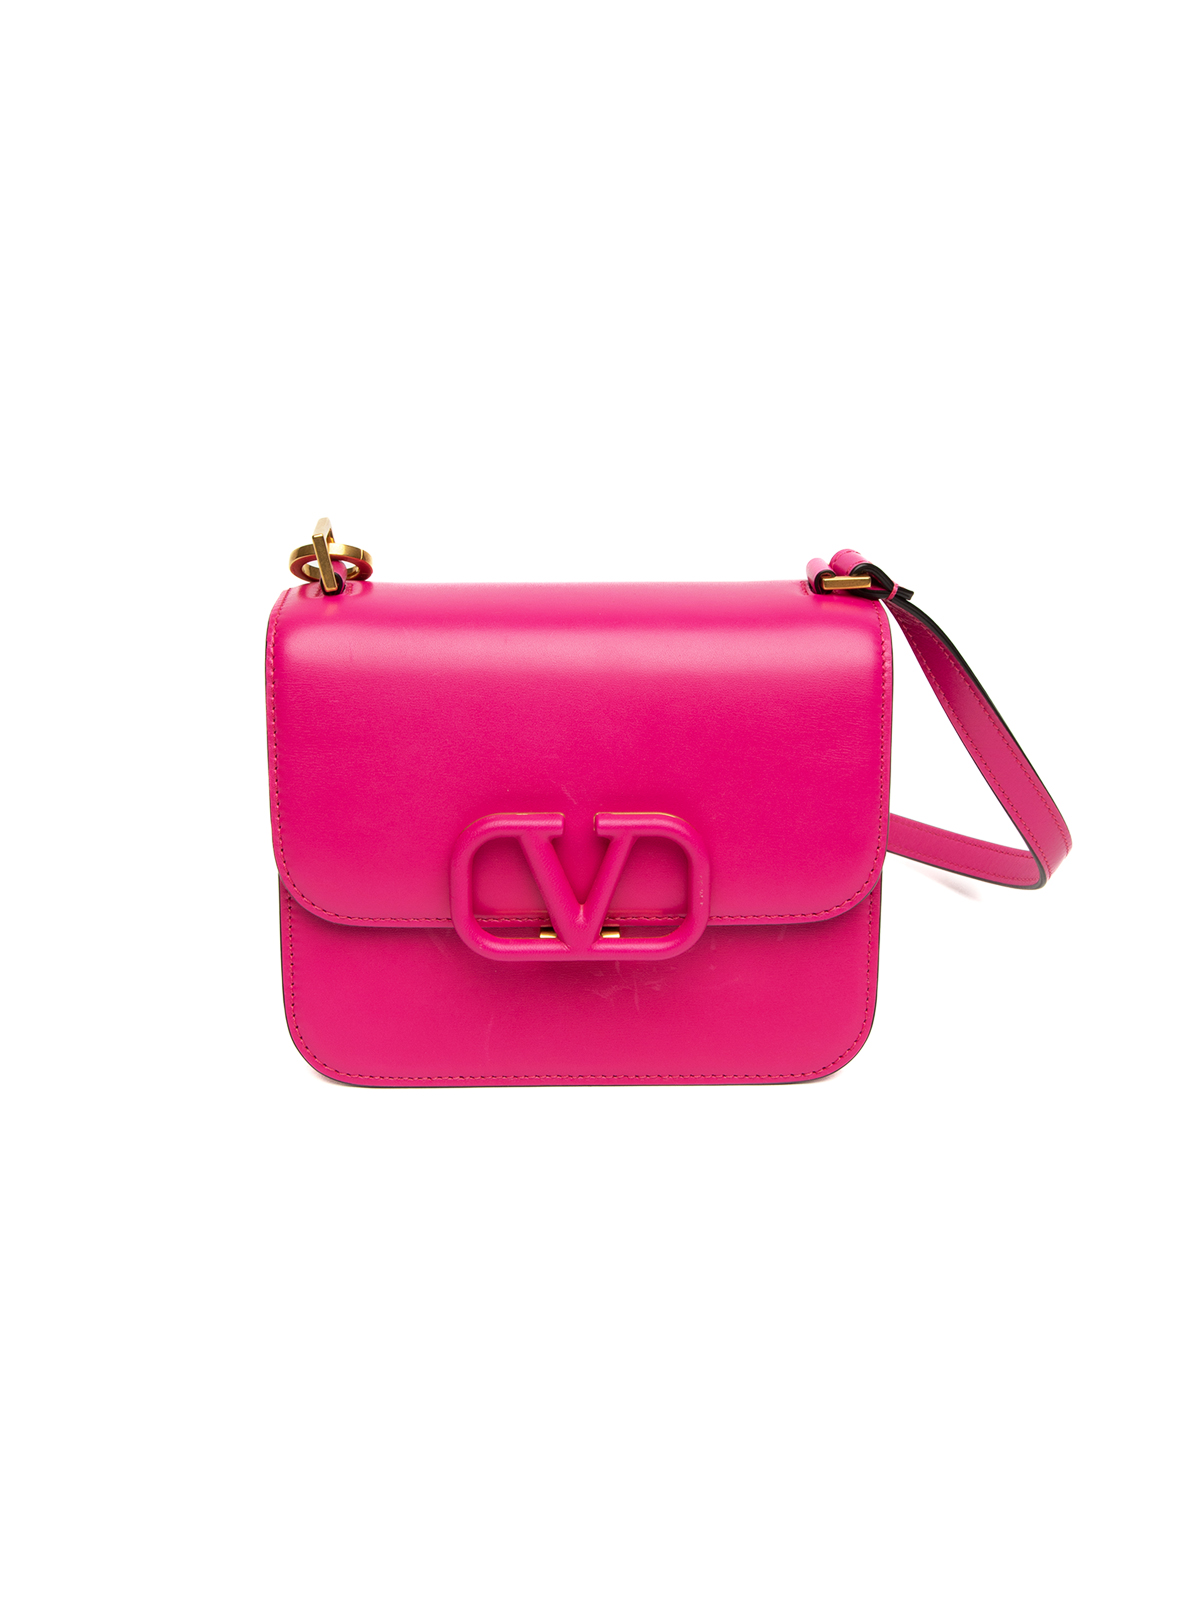 Valentino Garavani VSLING Mini Leather Bag